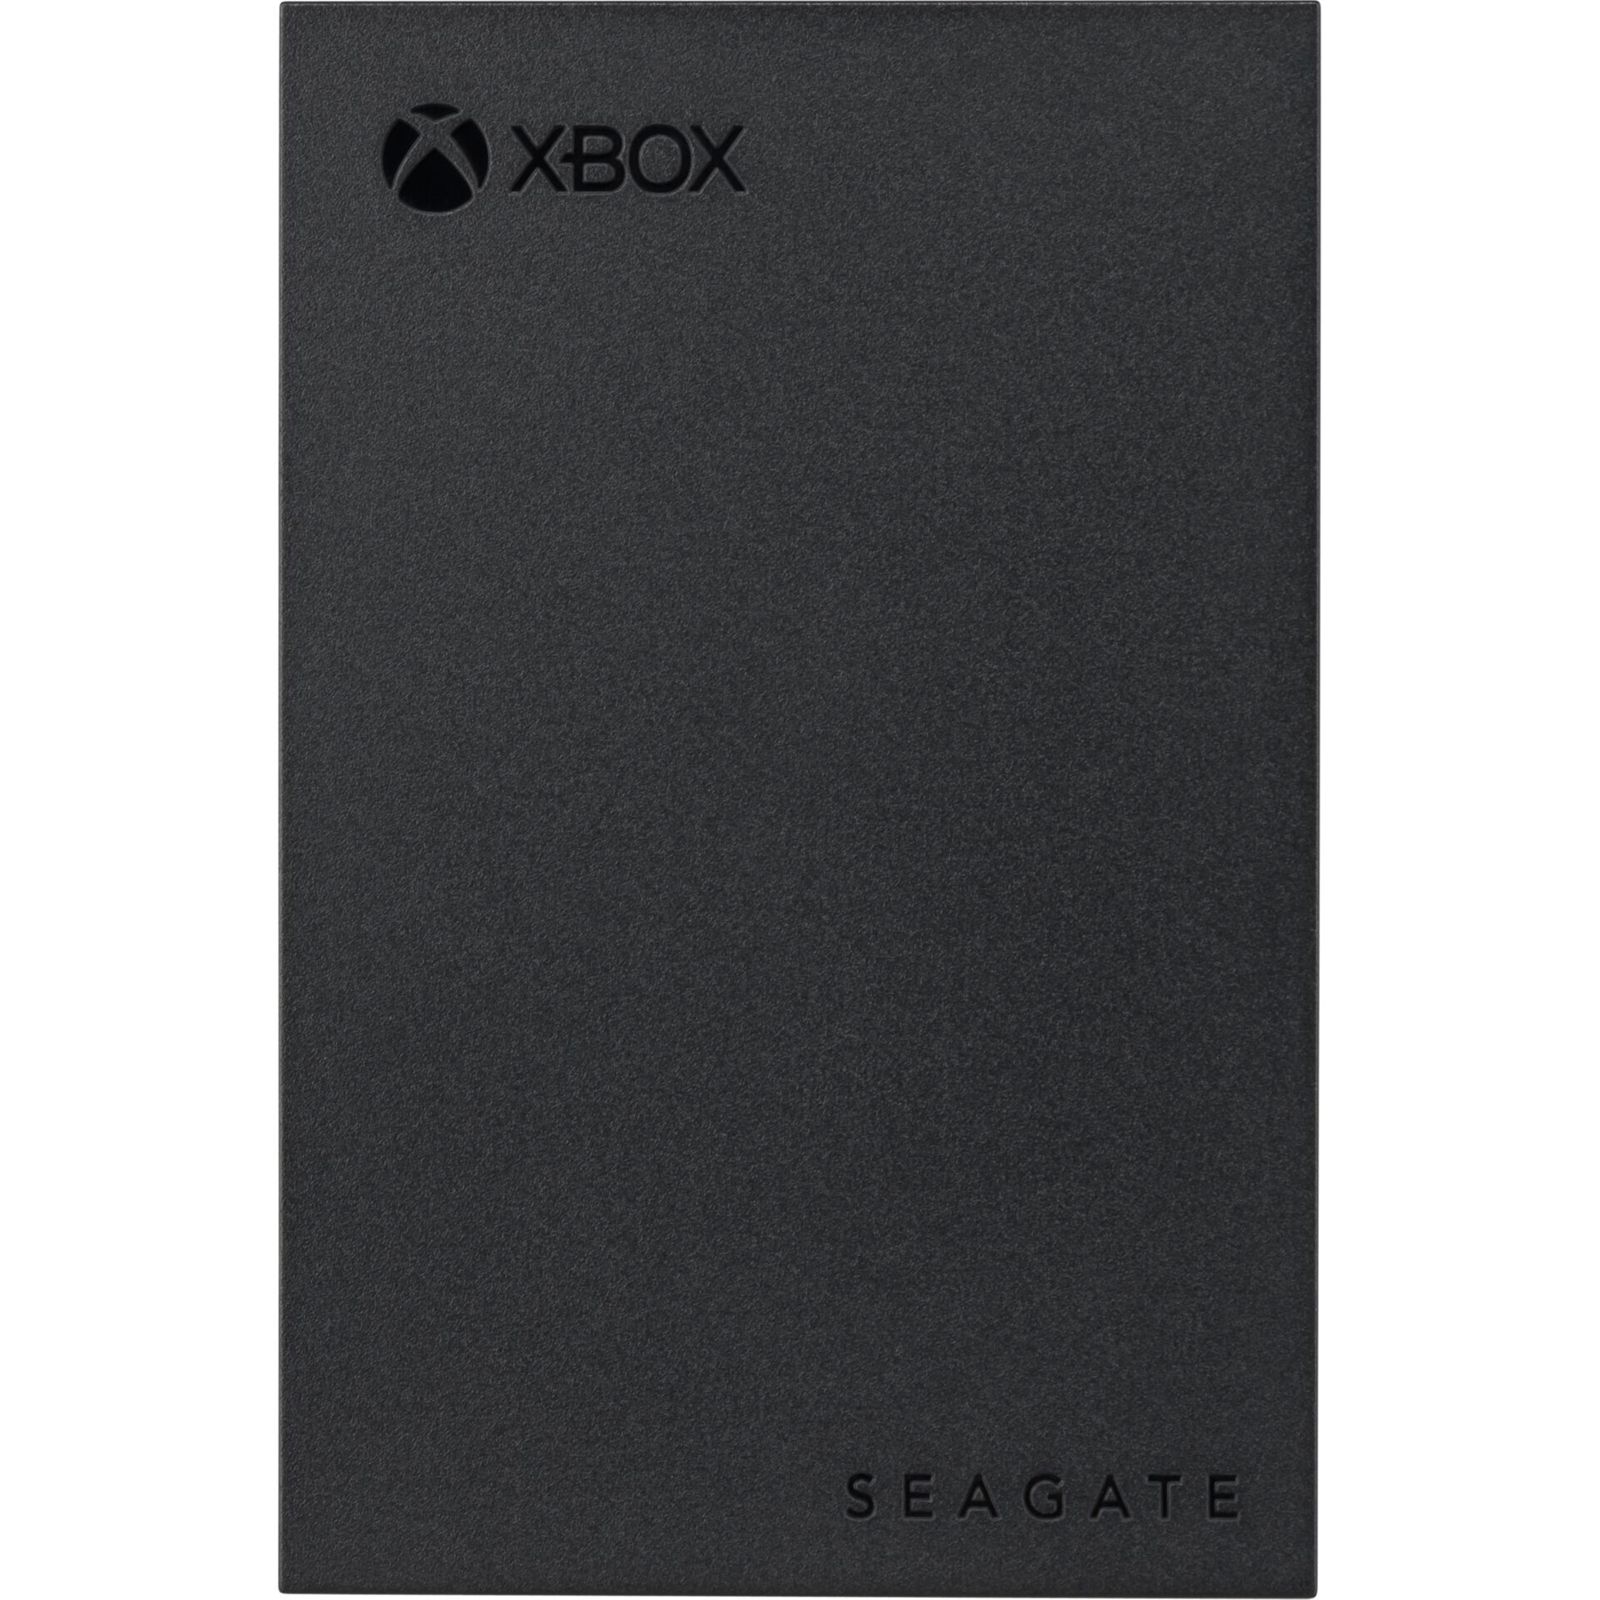 Seagate Game Drive per Xbox 2TB